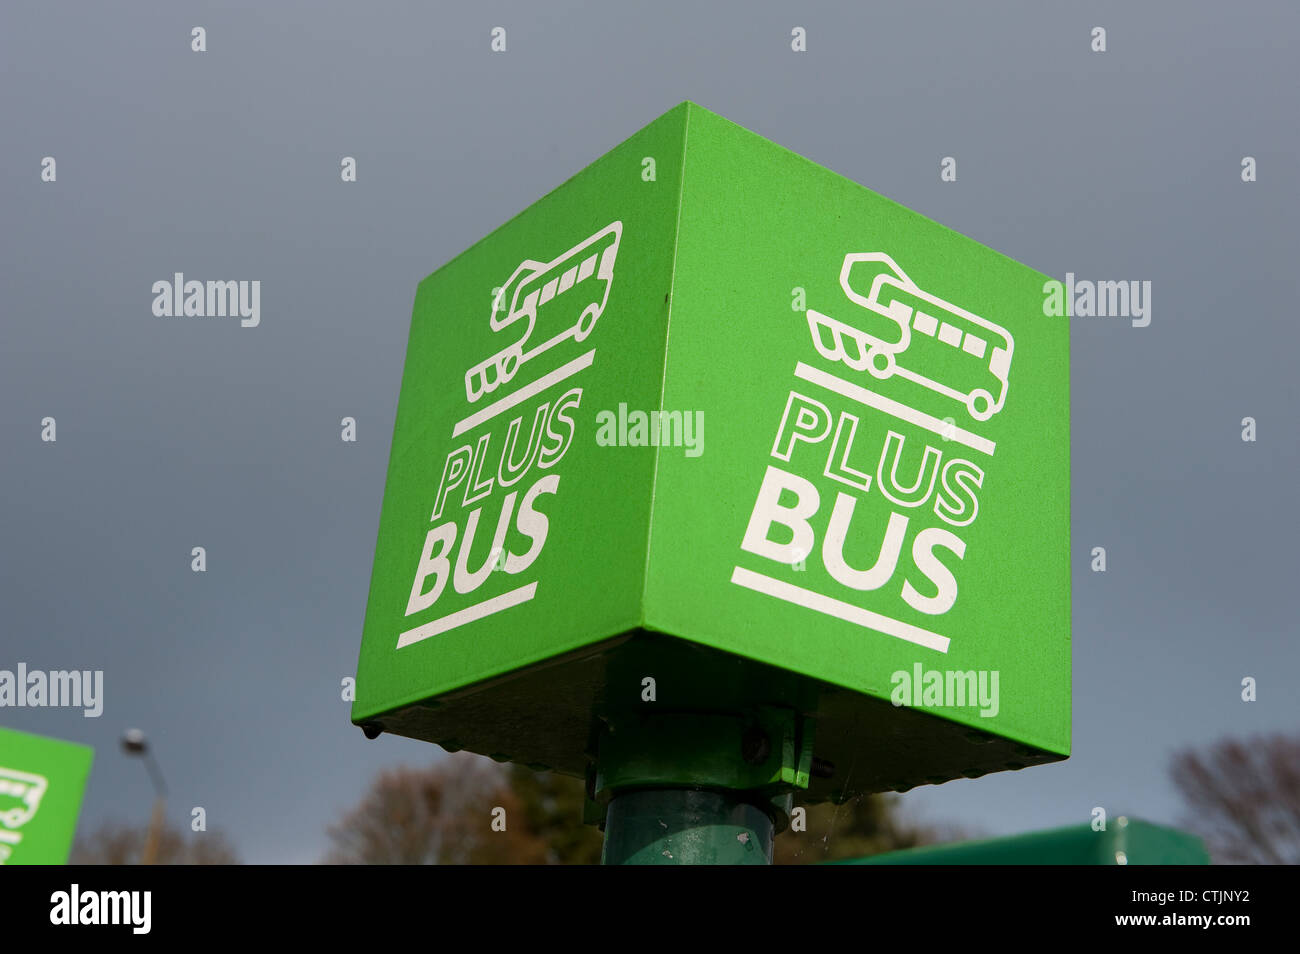 Plusbus firmar en una parada de autobús fuera de una estación de tren en Inglaterra. Foto de stock